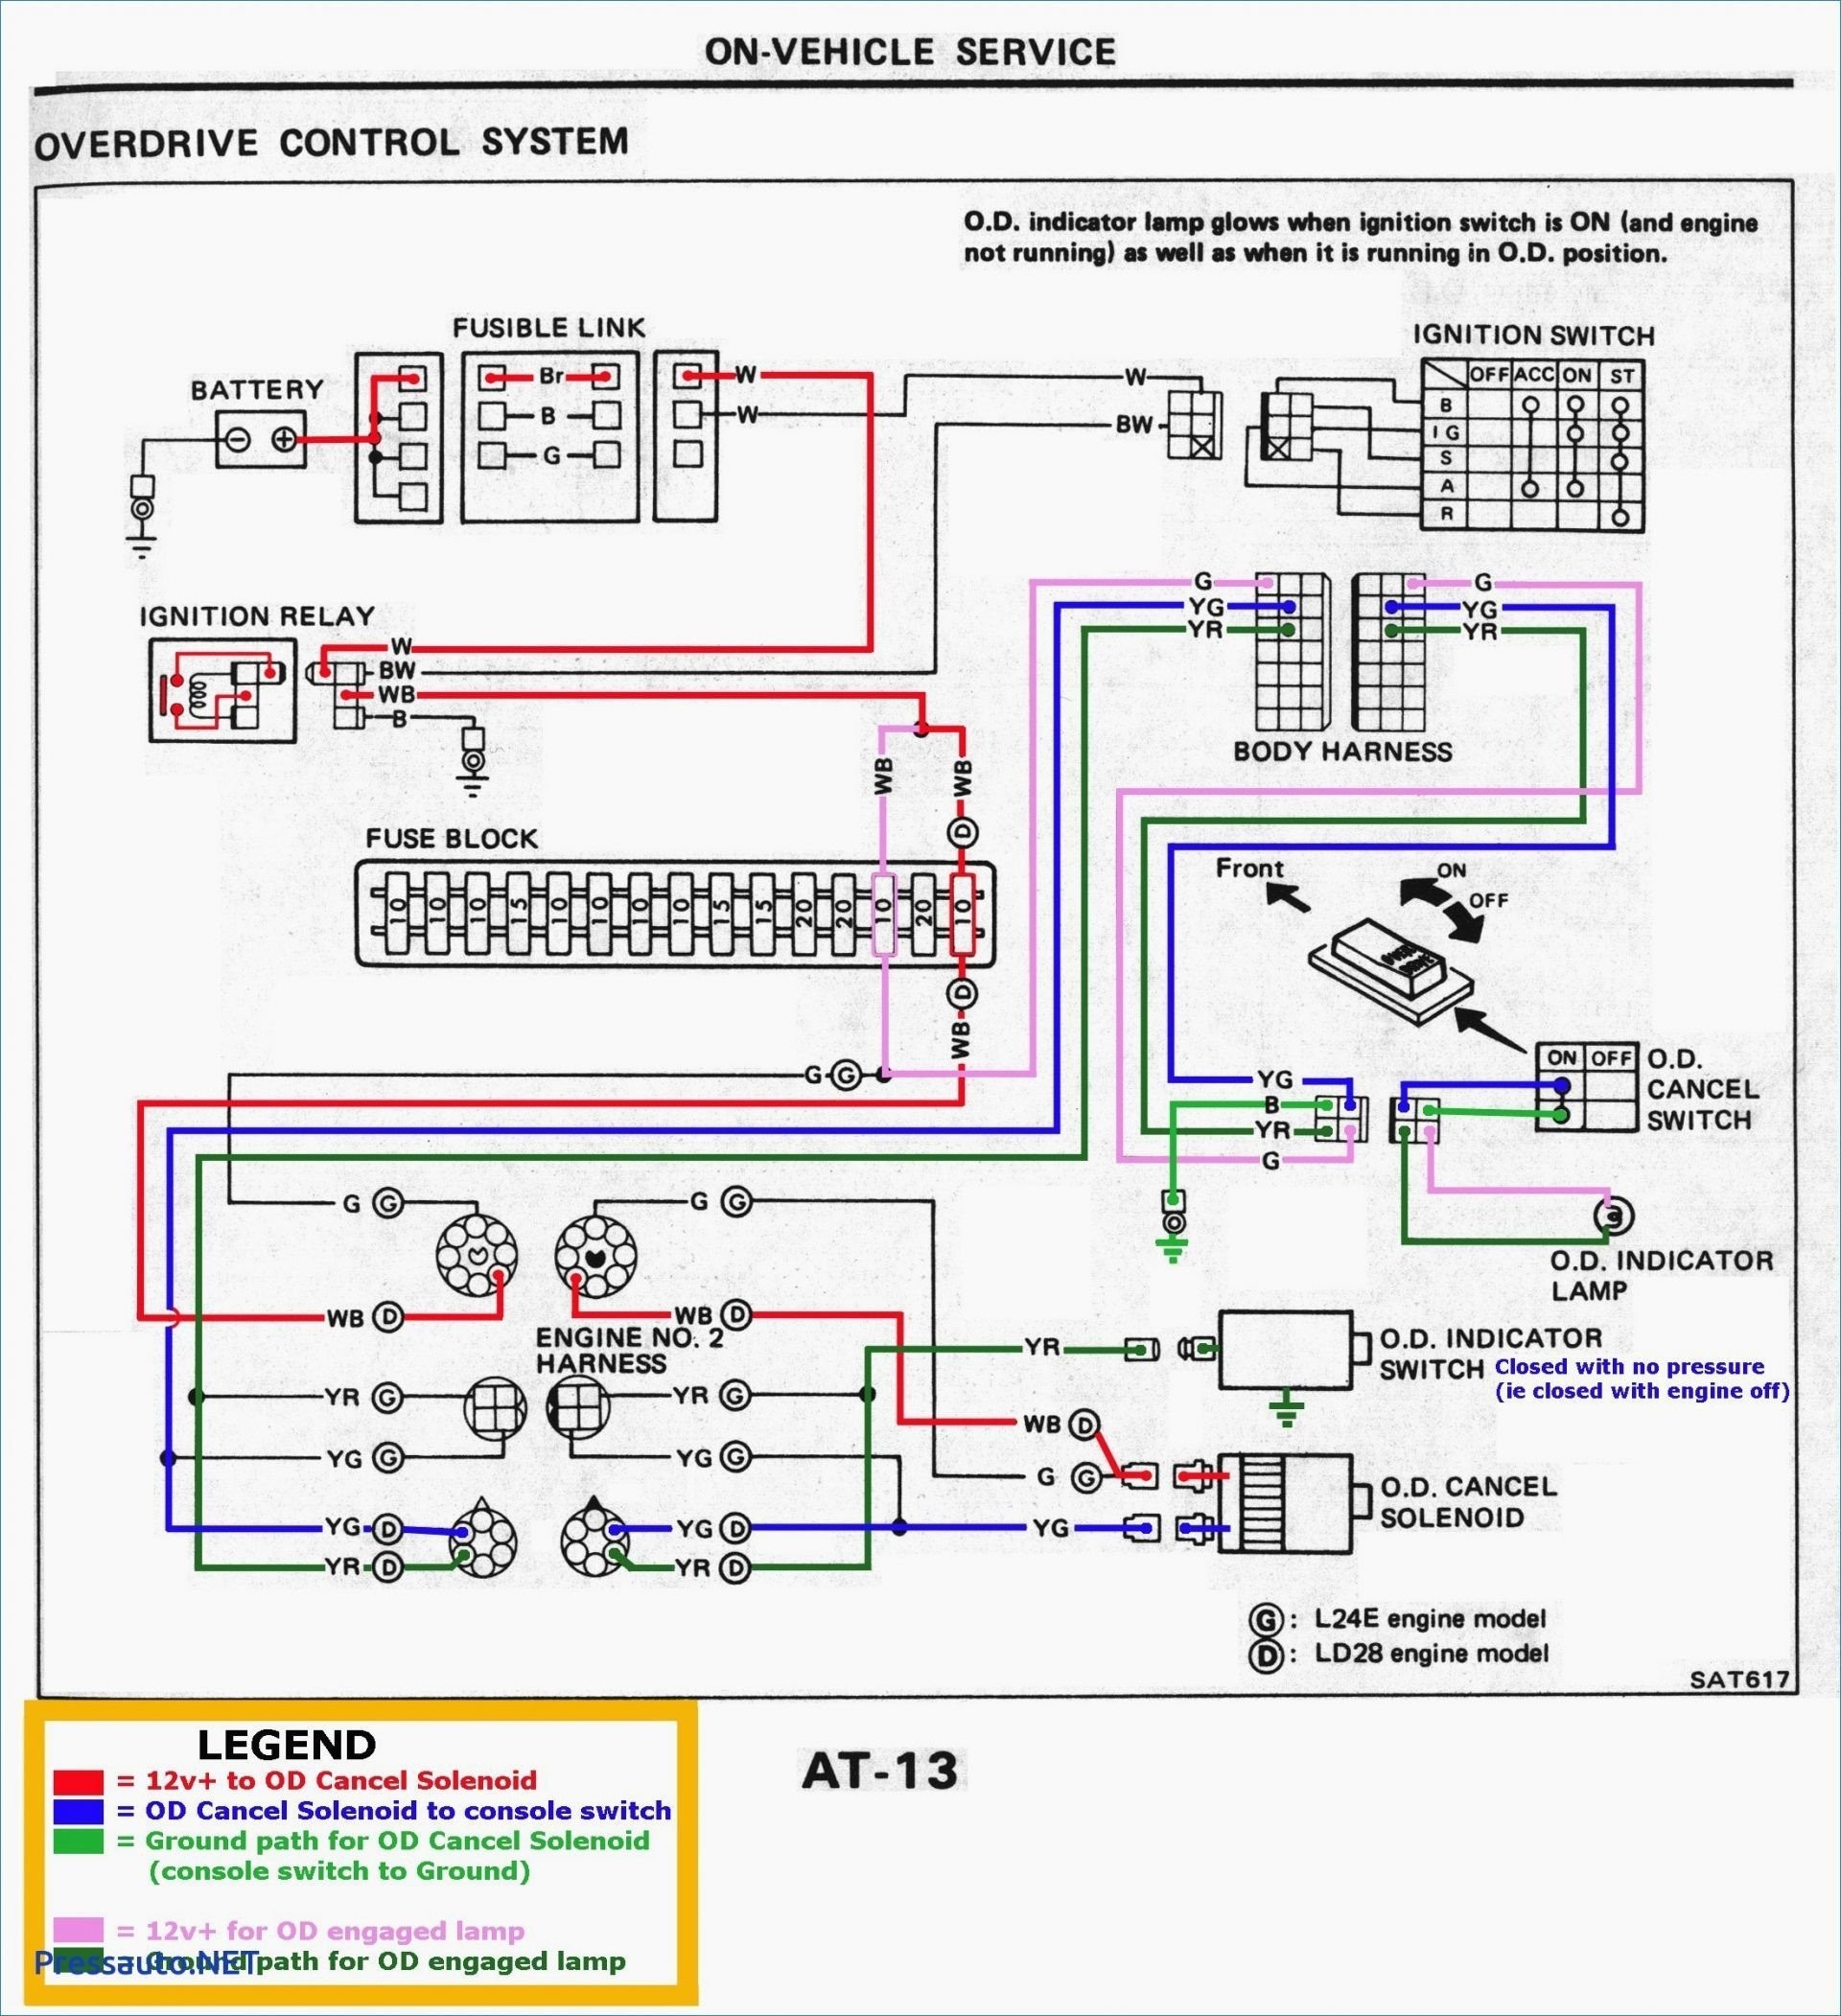 Ford Alternator Wiring Diagrams Sl 0775] Mercruiser 260 V8 Alternator Wire Diagram Help Of Ford Alternator Wiring Diagrams